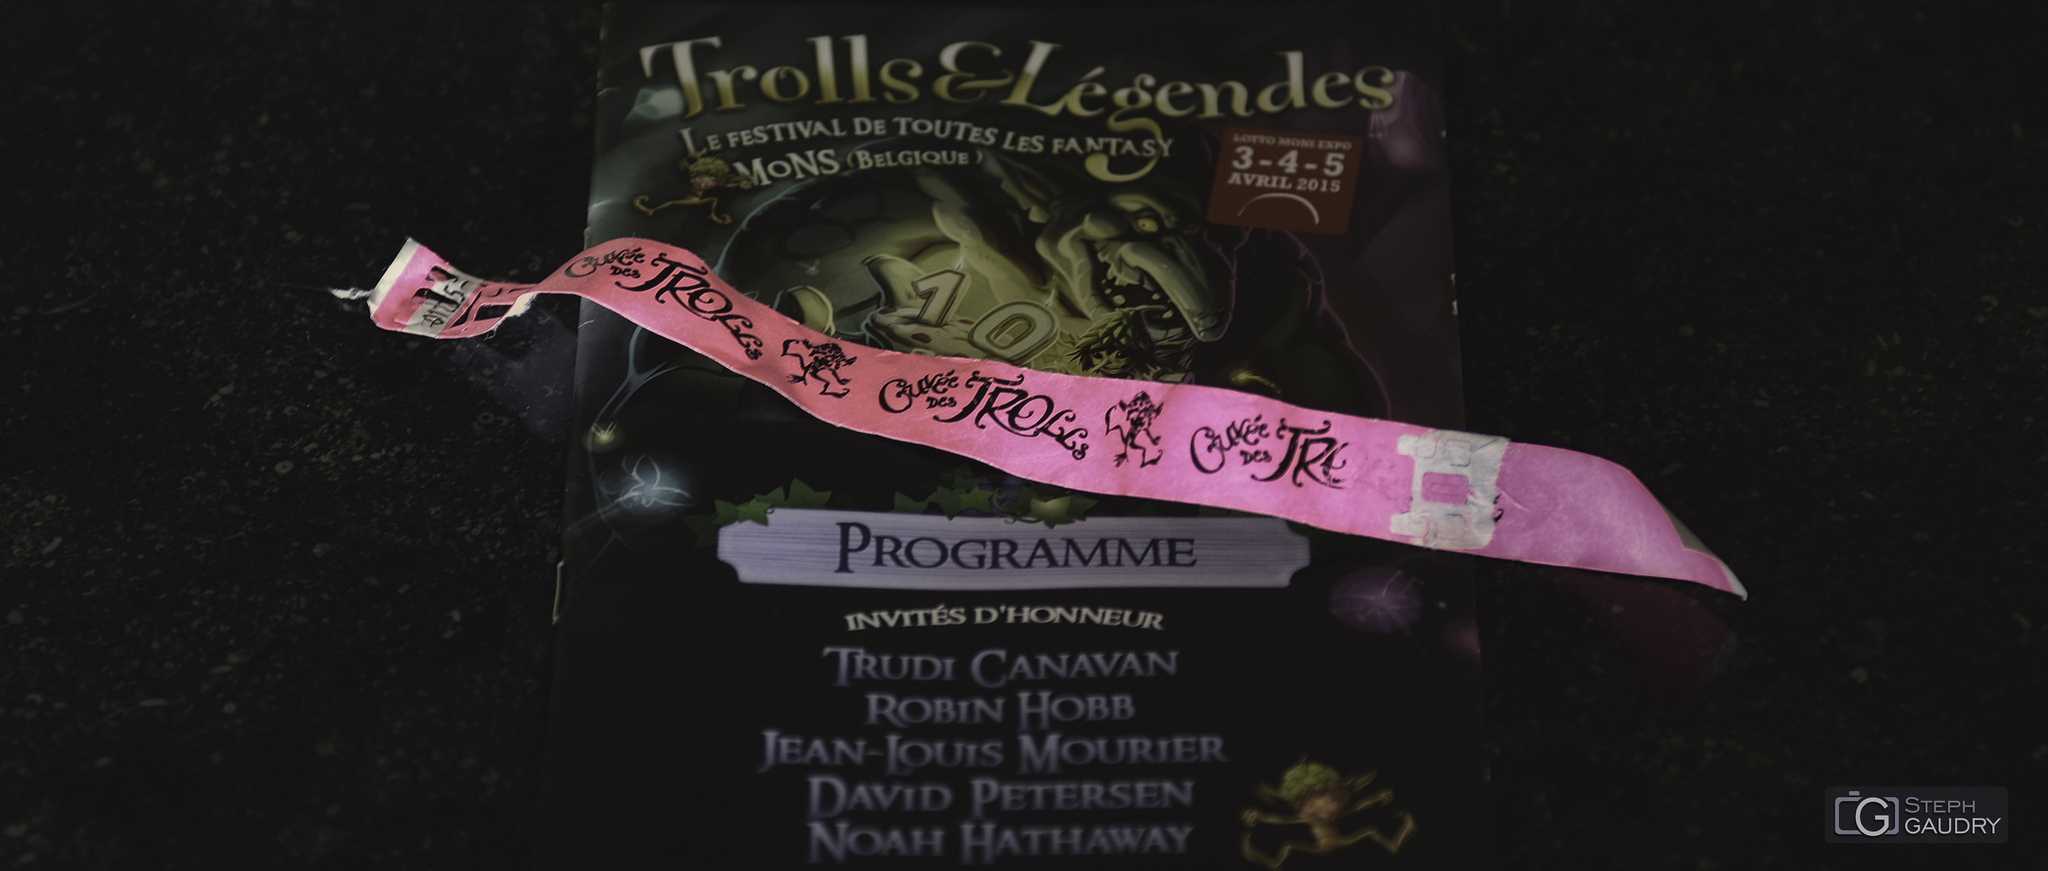 Trolls & Légendes 2015 [Klicken Sie hier, um die Diashow zu starten]